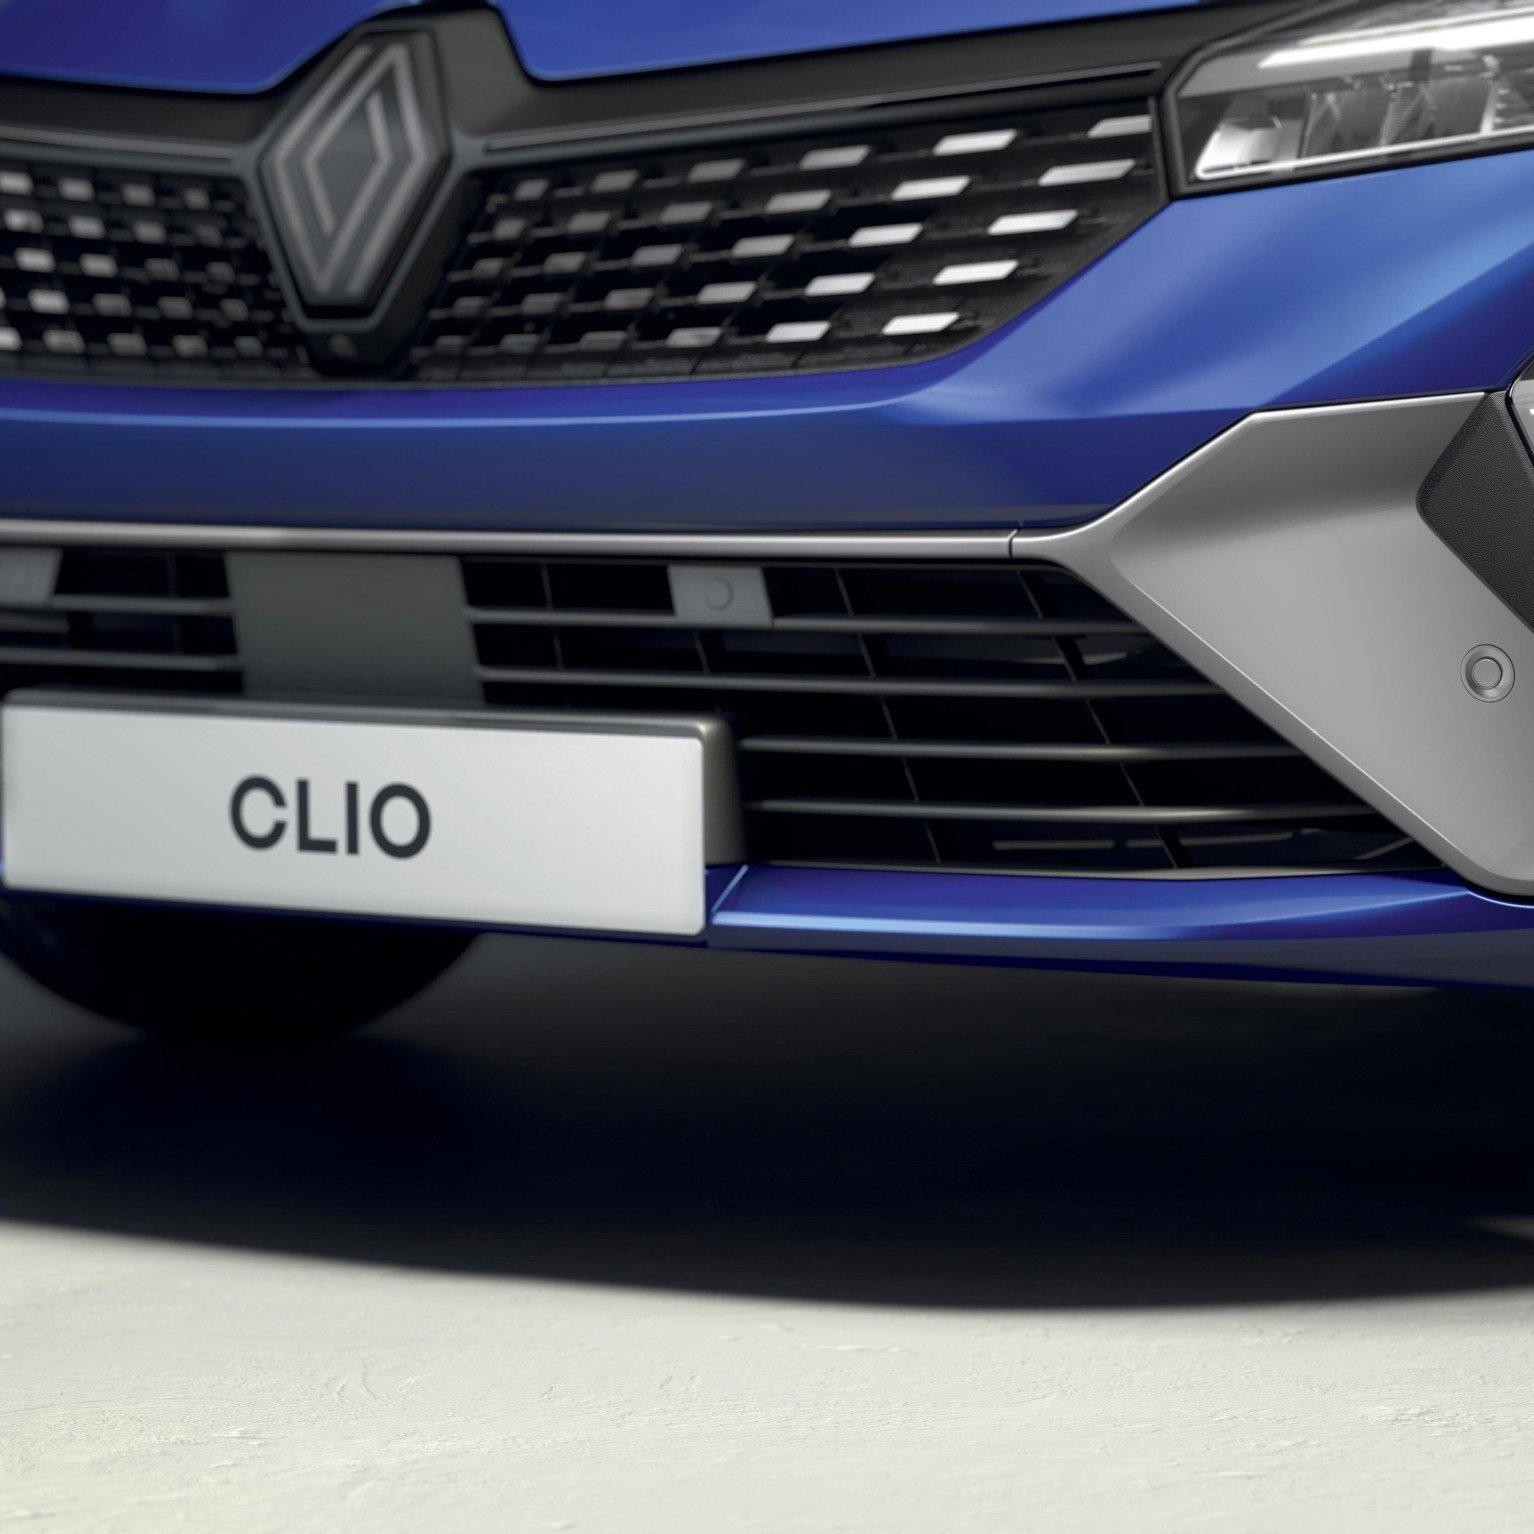 09 De nieuwe Renault Clio toonbeeld van veelzijdigheid luidt nieuwe ontwerpstijl in